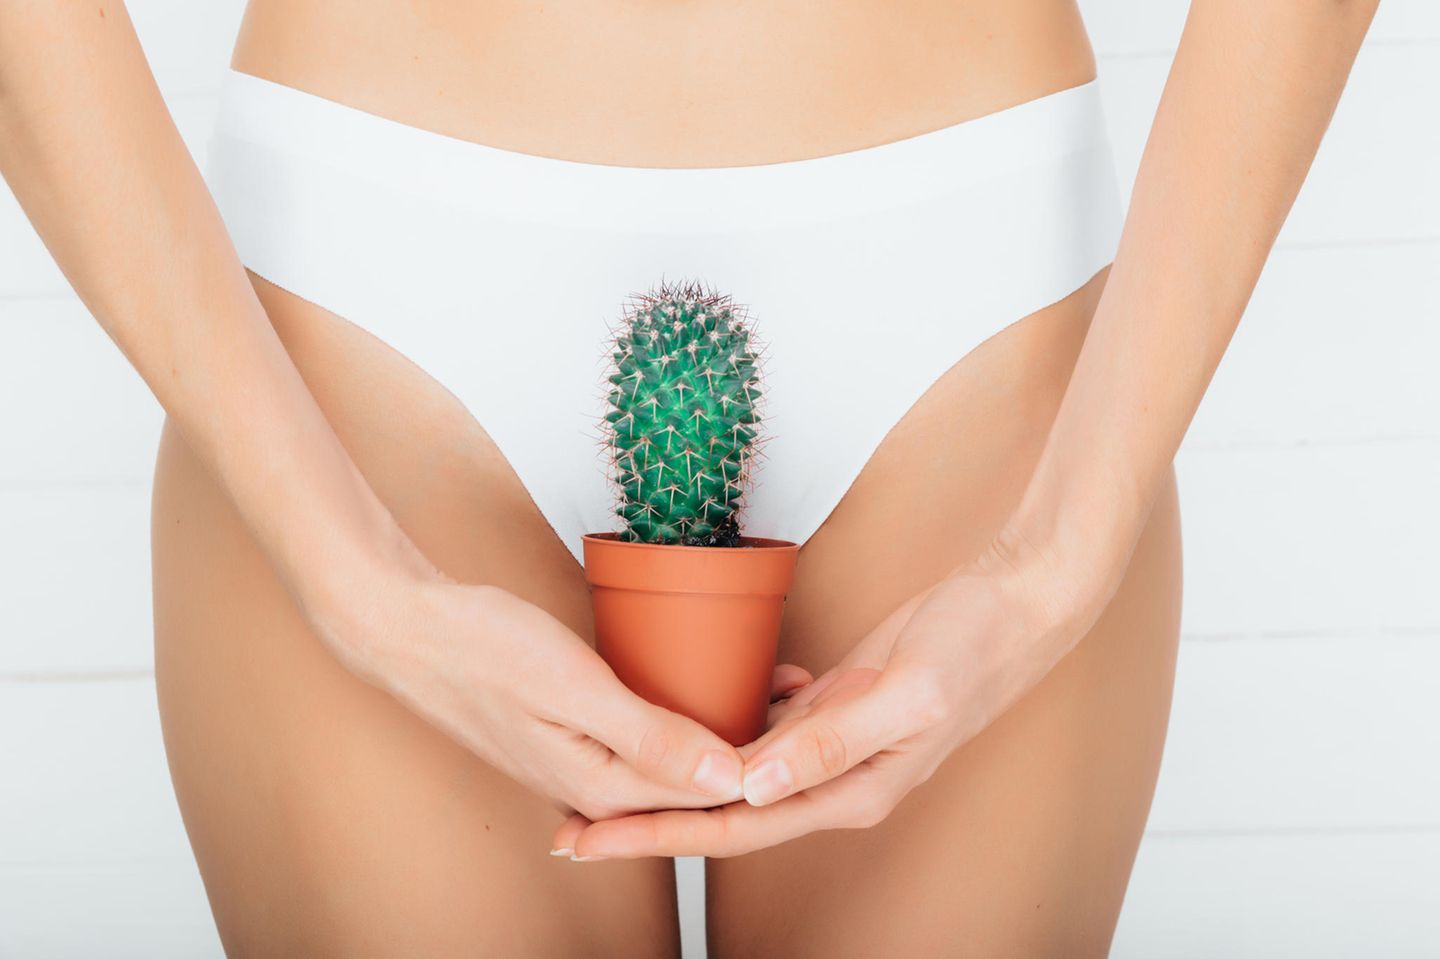 Intimfrisuren-Trends 2019: Eine Frau mit einem Kaktus vor der Vagina